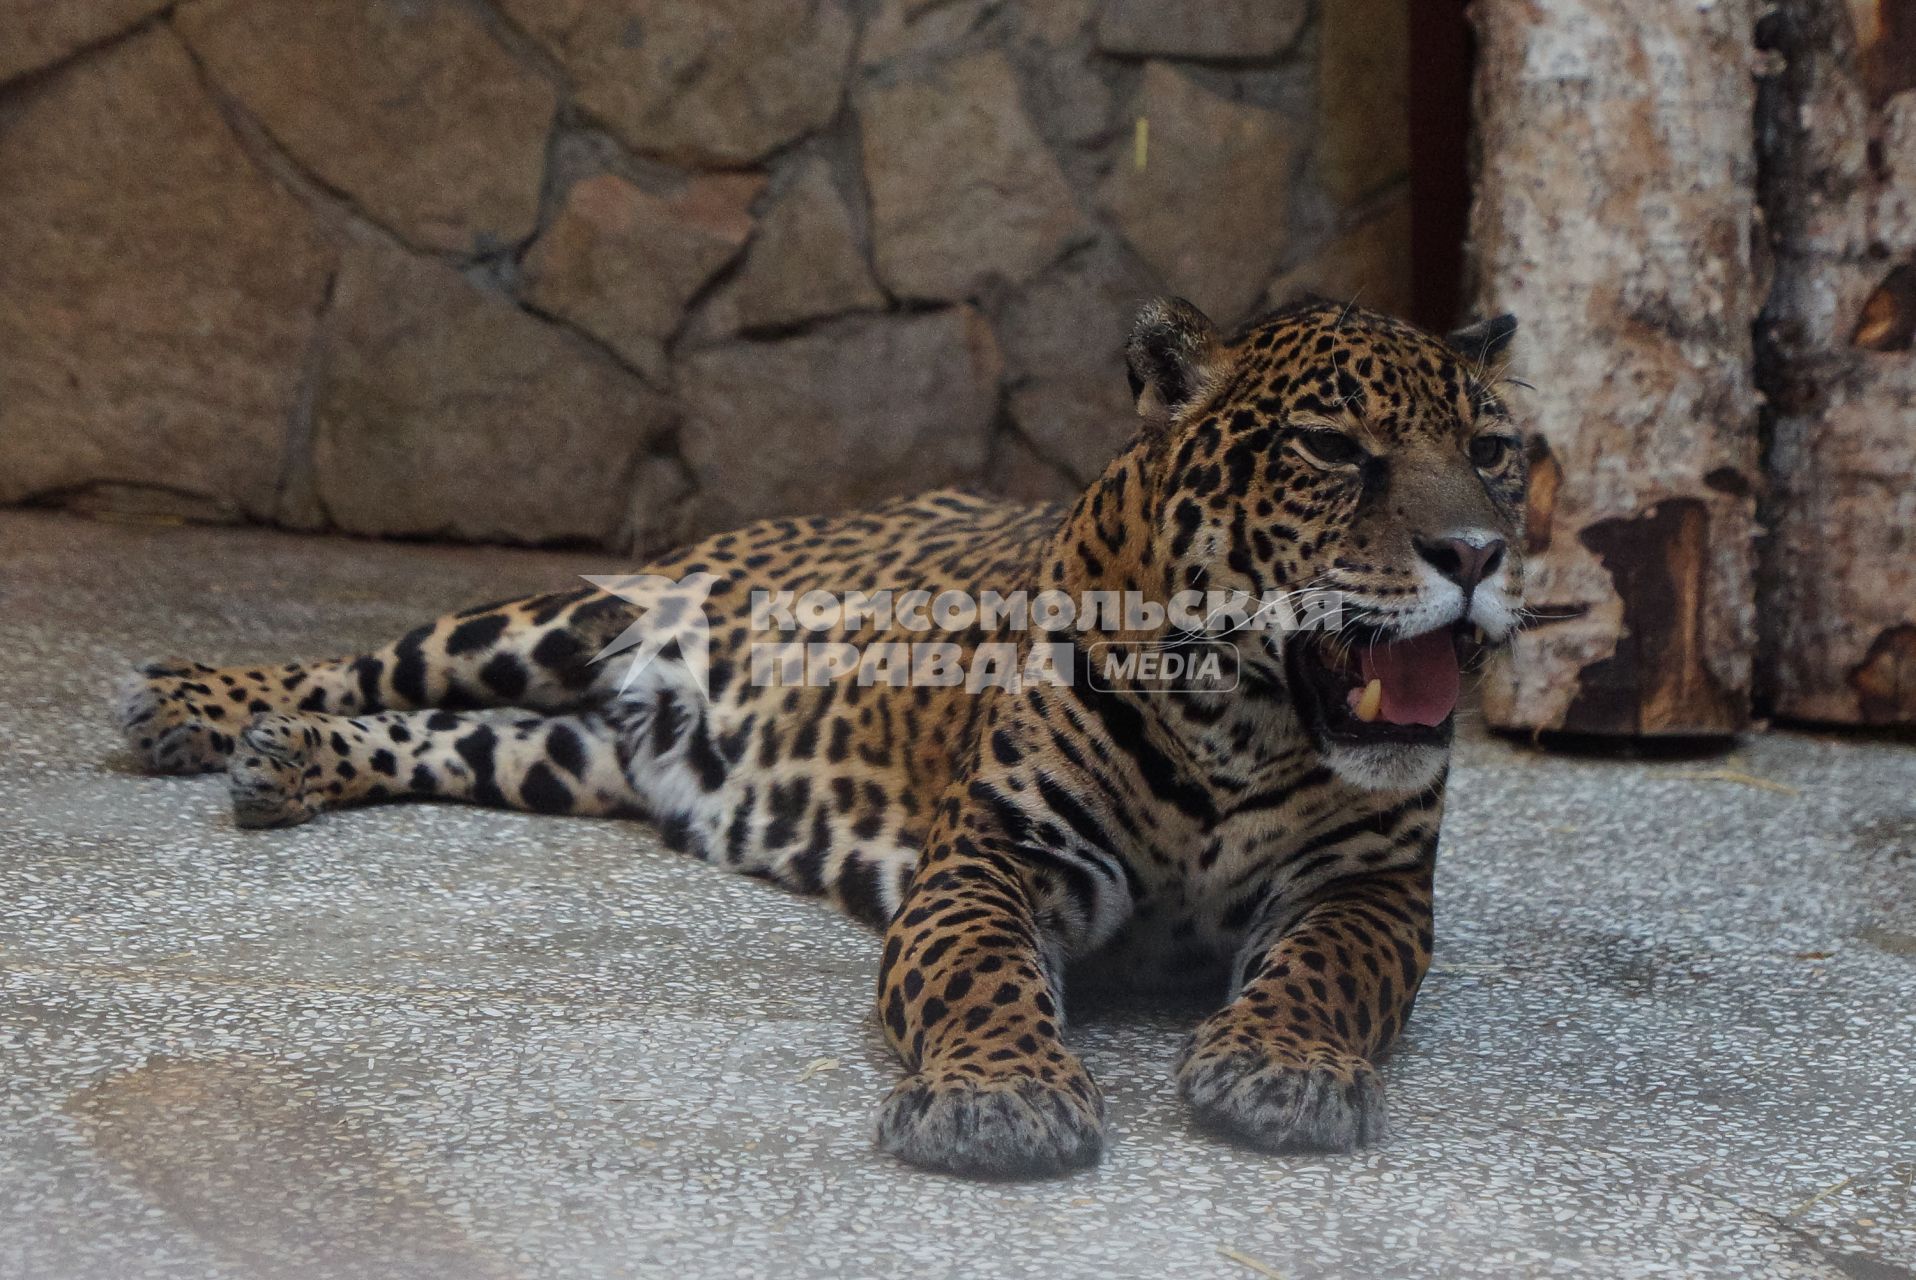 Самка ягуара впервые вышла на экспозицию Екатербургского зоопарка